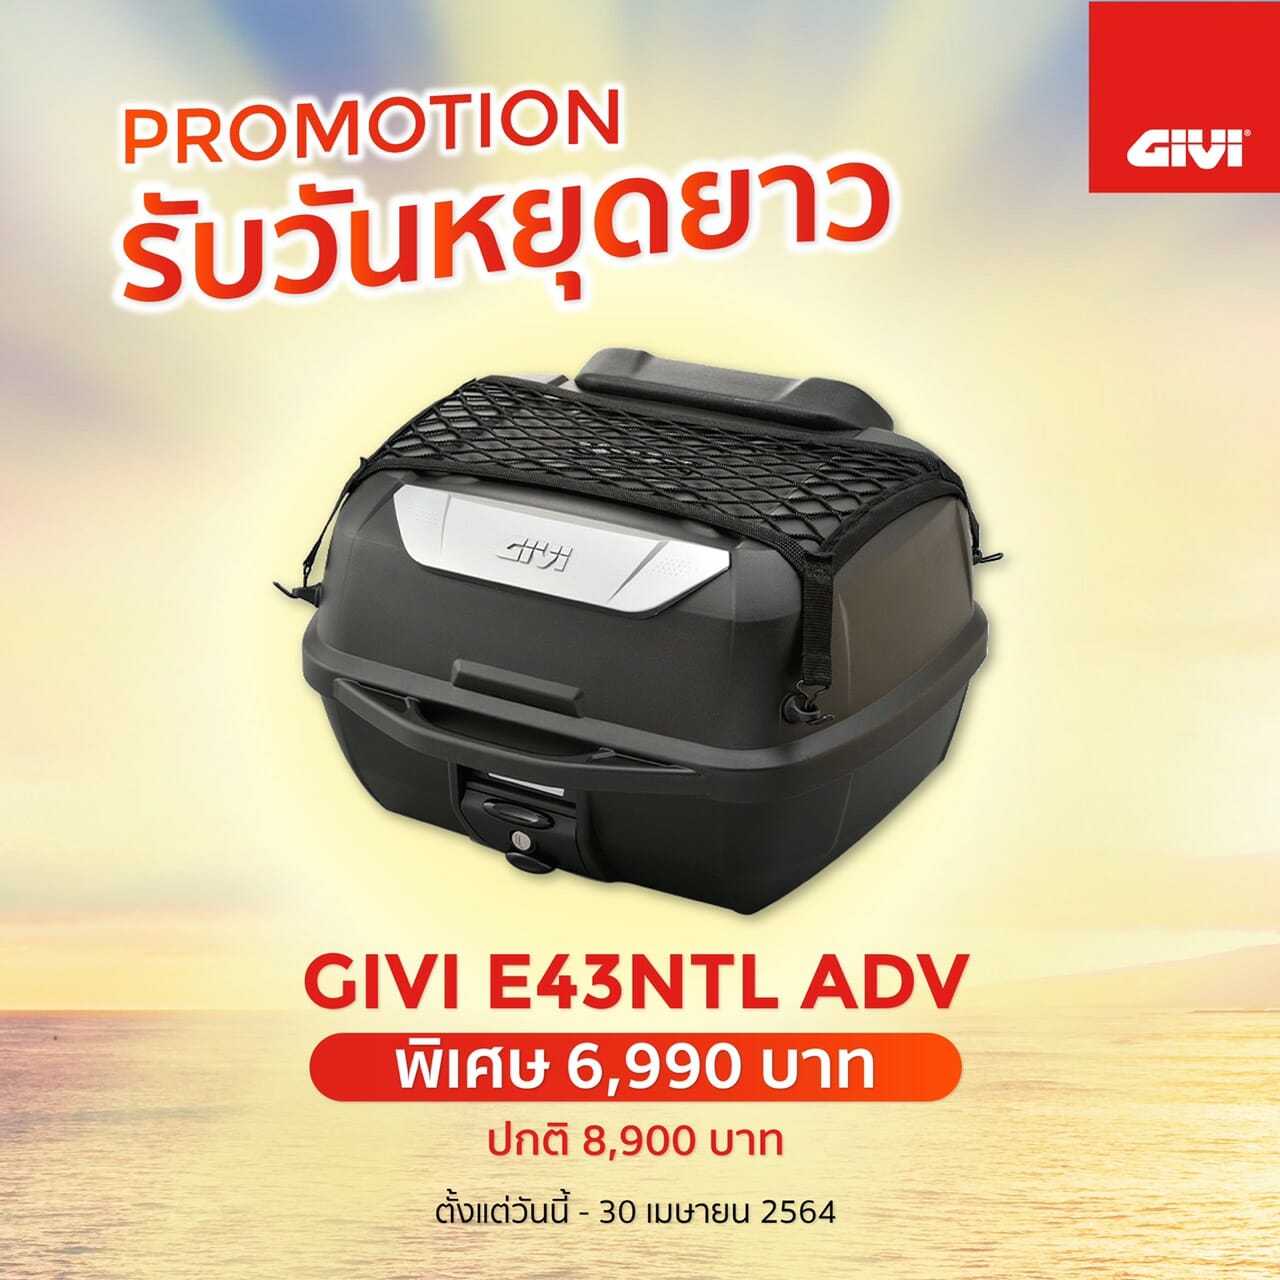 GIVI BIKEMATE Promotion April 2021 E43NTL ADV Full Options